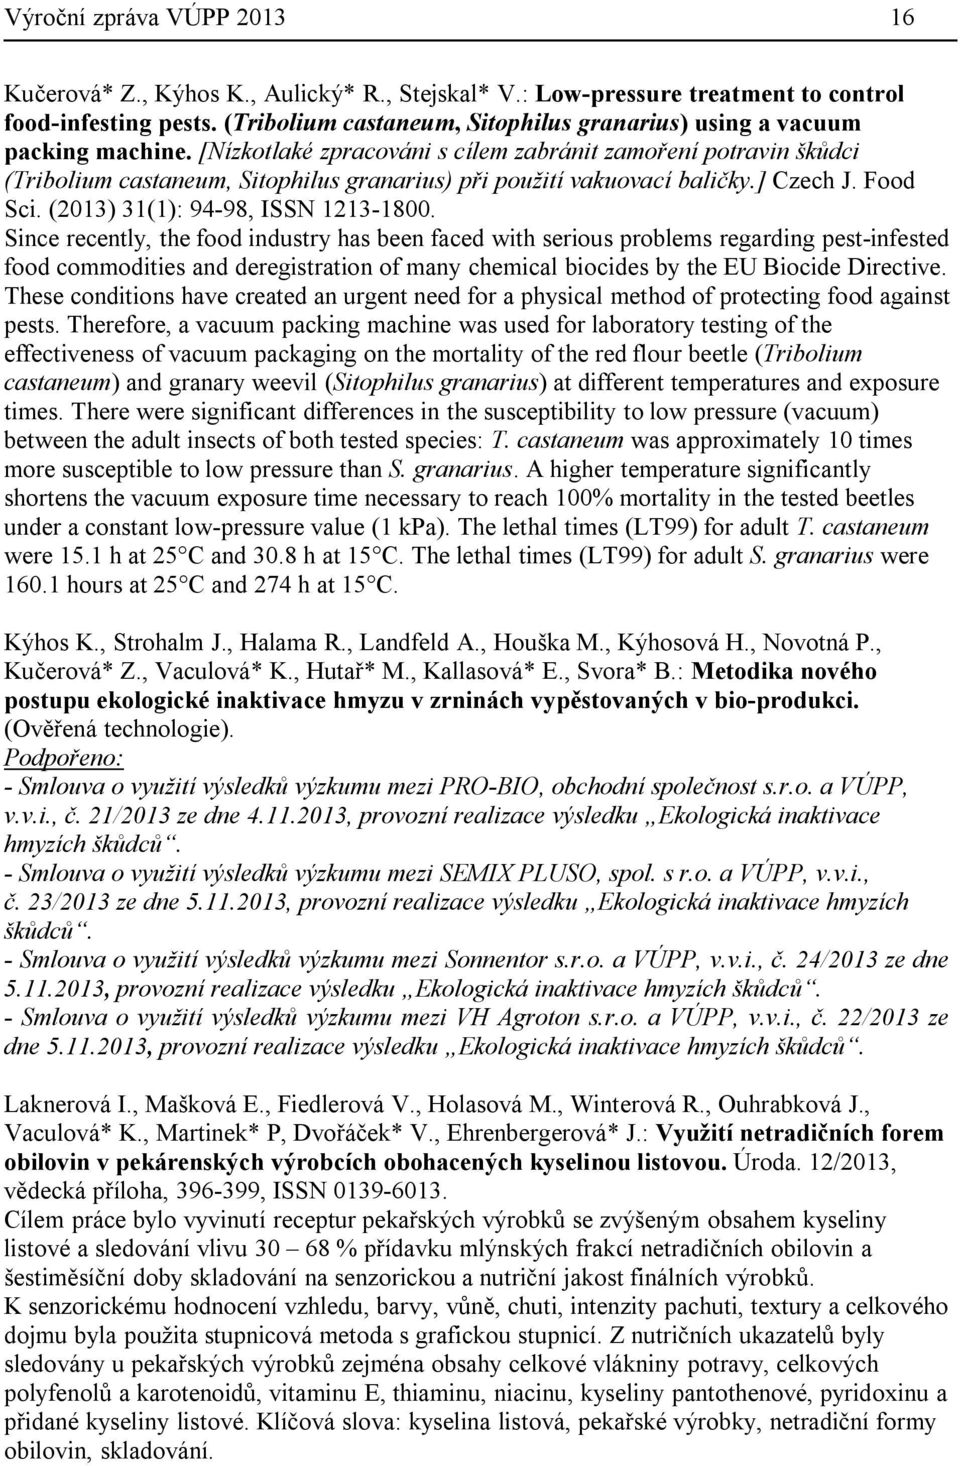 [Nízkotlaké zpracováni s cílem zabránit zamoření potravin škůdci (Tribolium castaneum, Sitophilus granarius) při použití vakuovací baličky.] Czech J. Food Sci. (2013) 31(1): 94-98, ISSN 1213-1800.